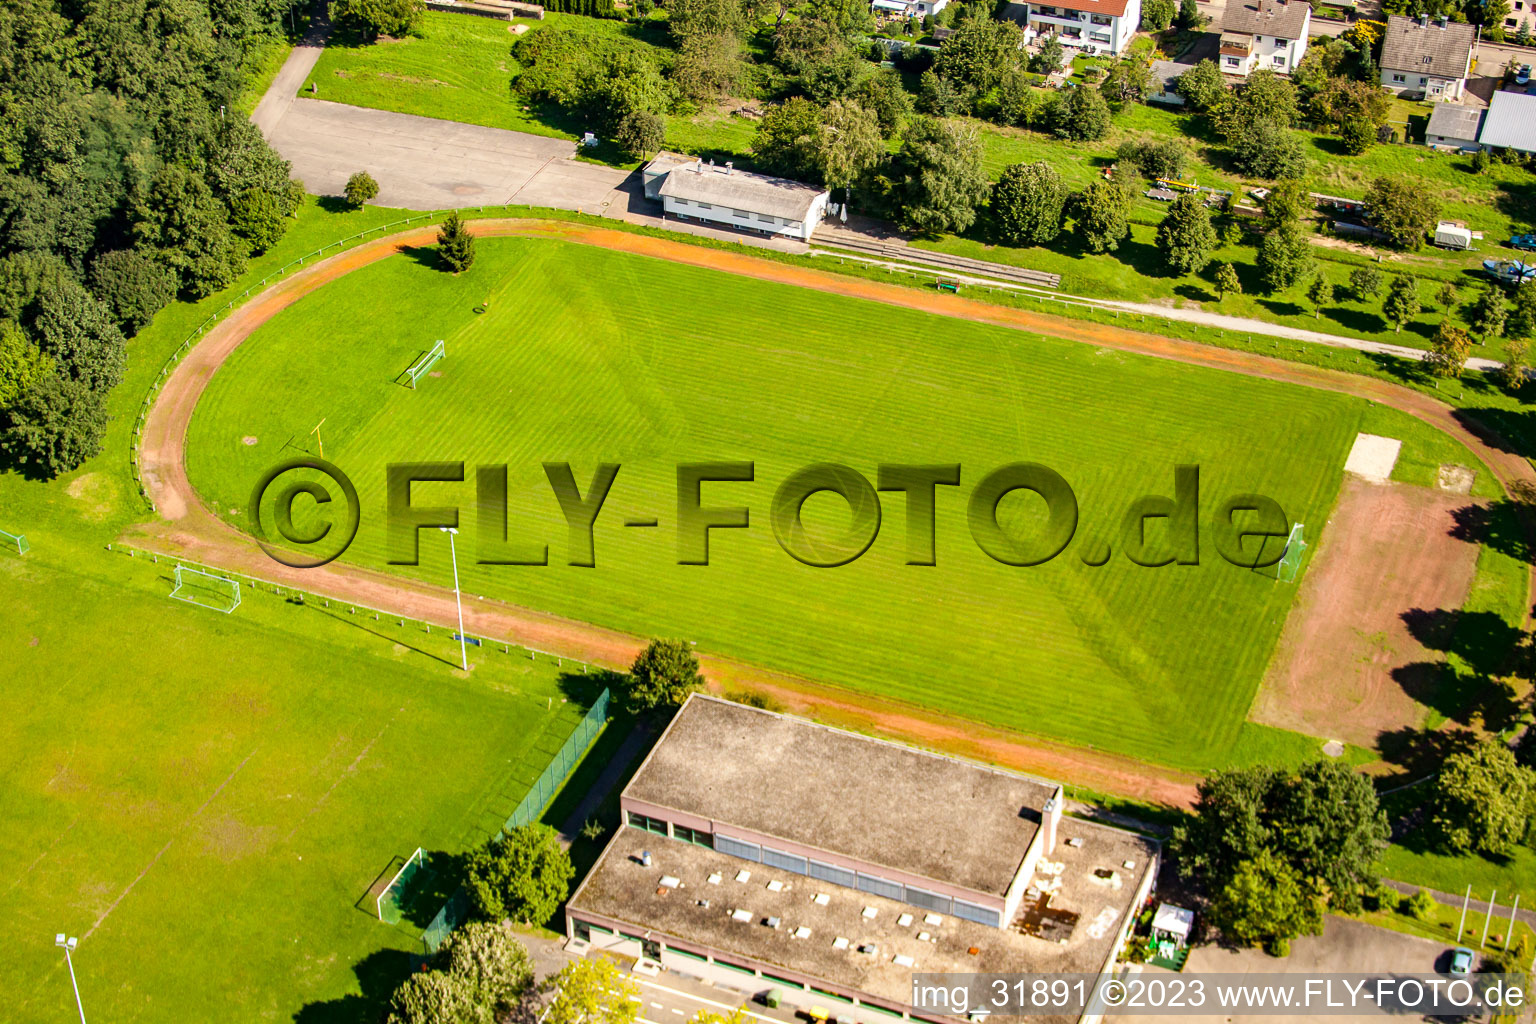 Luftbild von Rauental, Fußball-Verein 1919 Rauental in Rastatt im Bundesland Baden-Württemberg, Deutschland